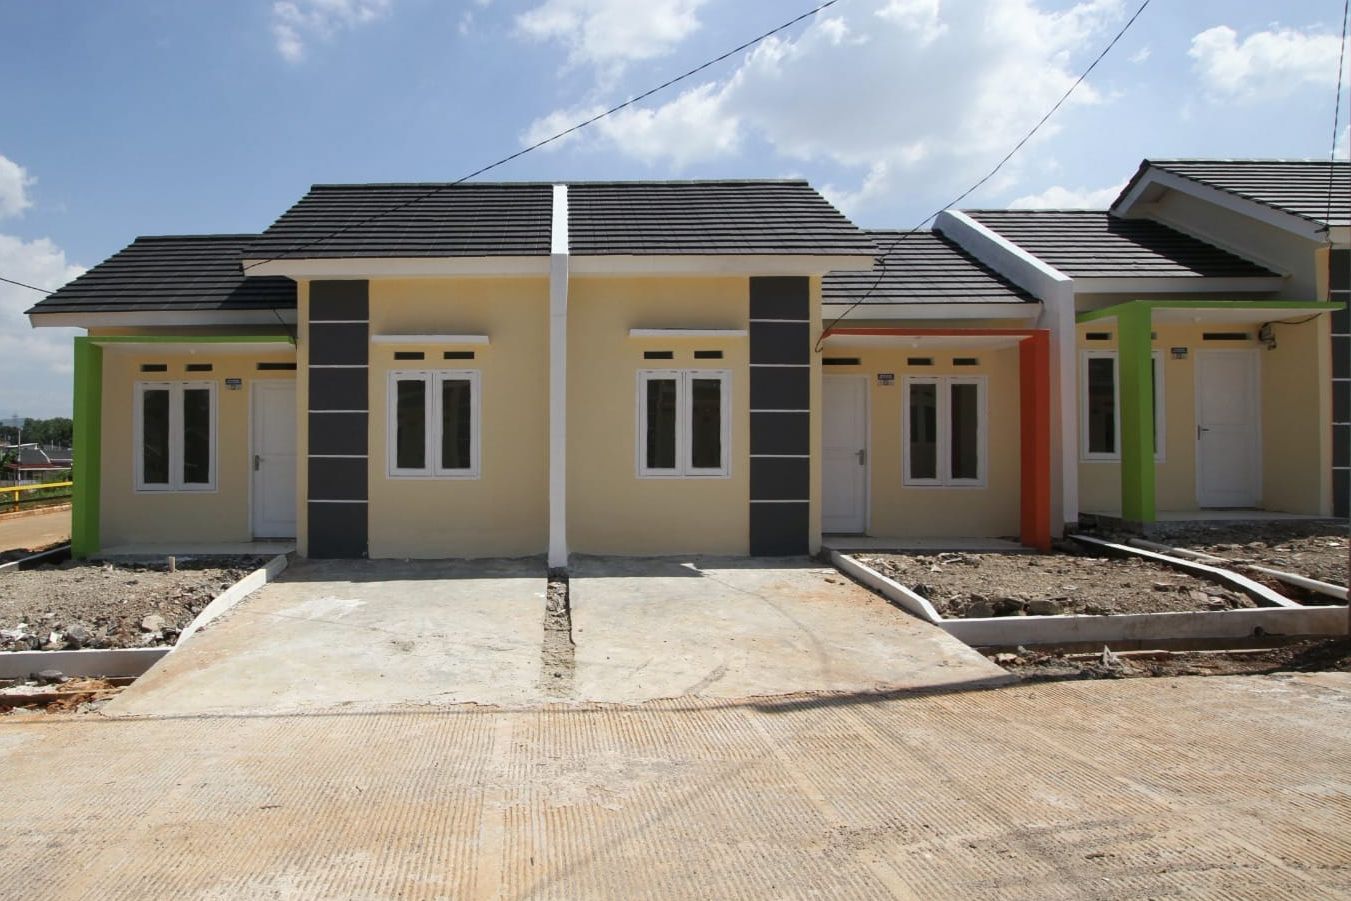 [POPULER PROPERTI] Cek, 5 Pilihan Rumah Subsidi di Ponorogo Rp 160 Jutaan